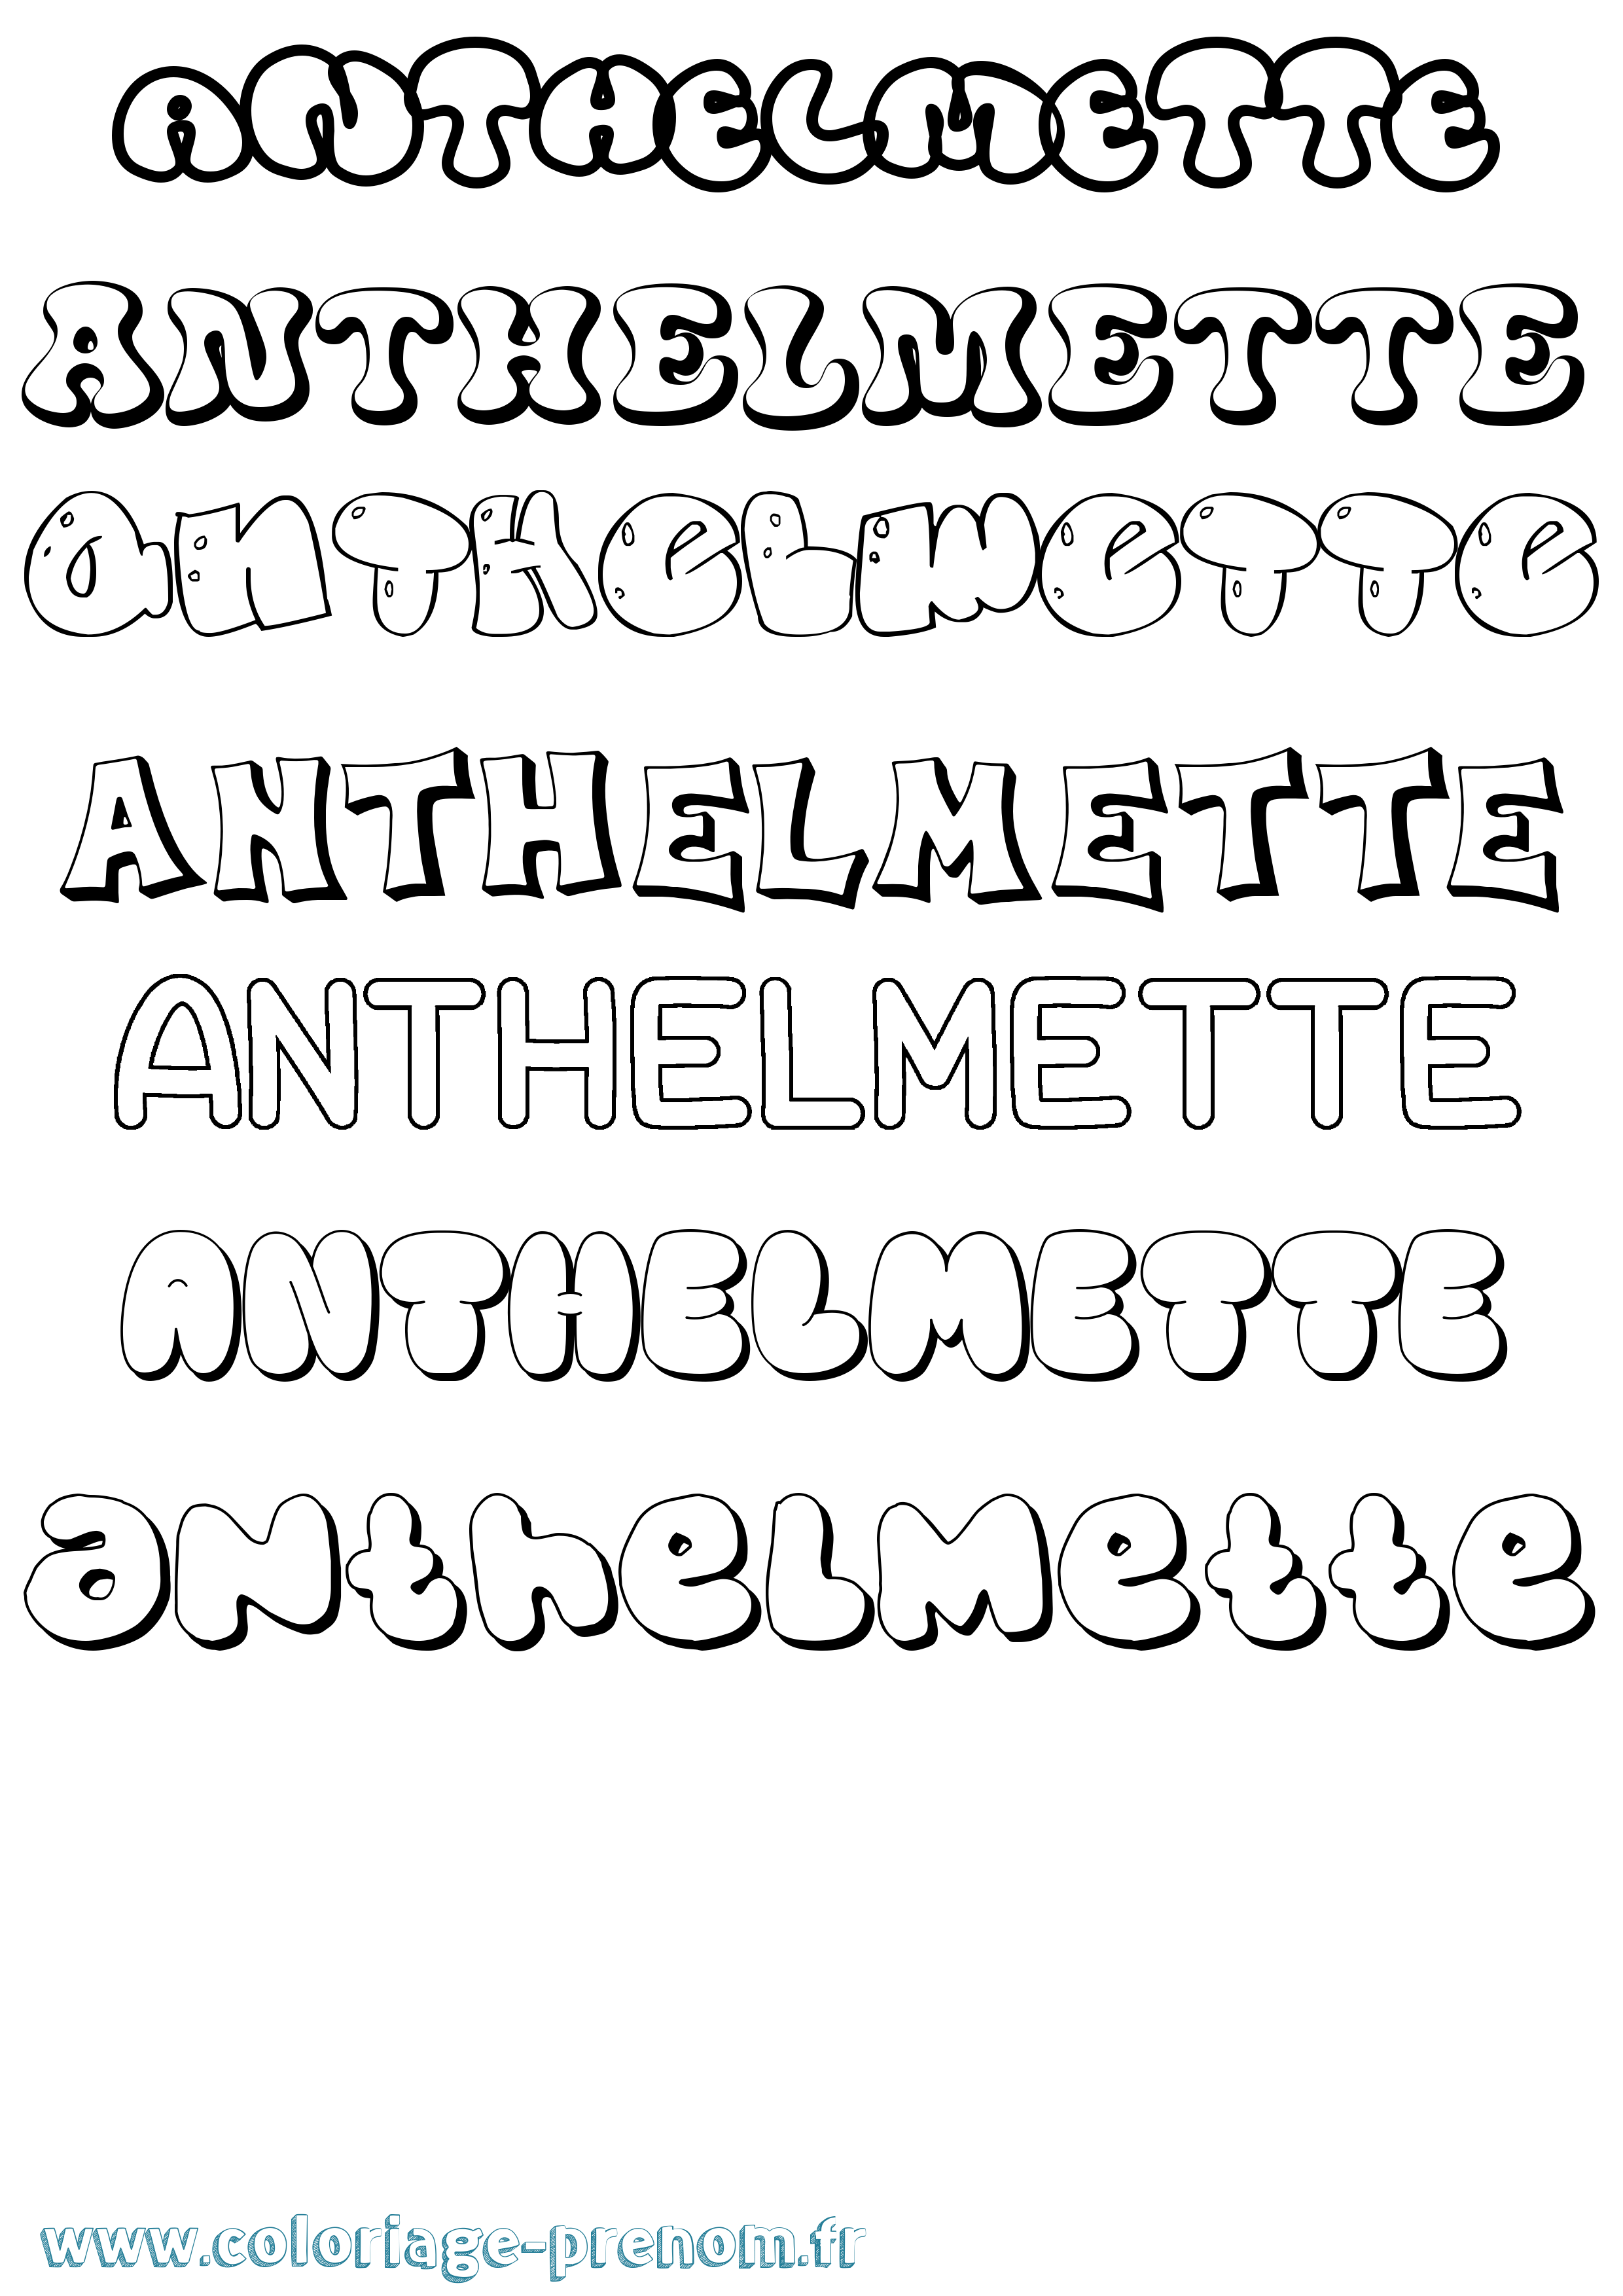 Coloriage prénom Anthelmette Bubble